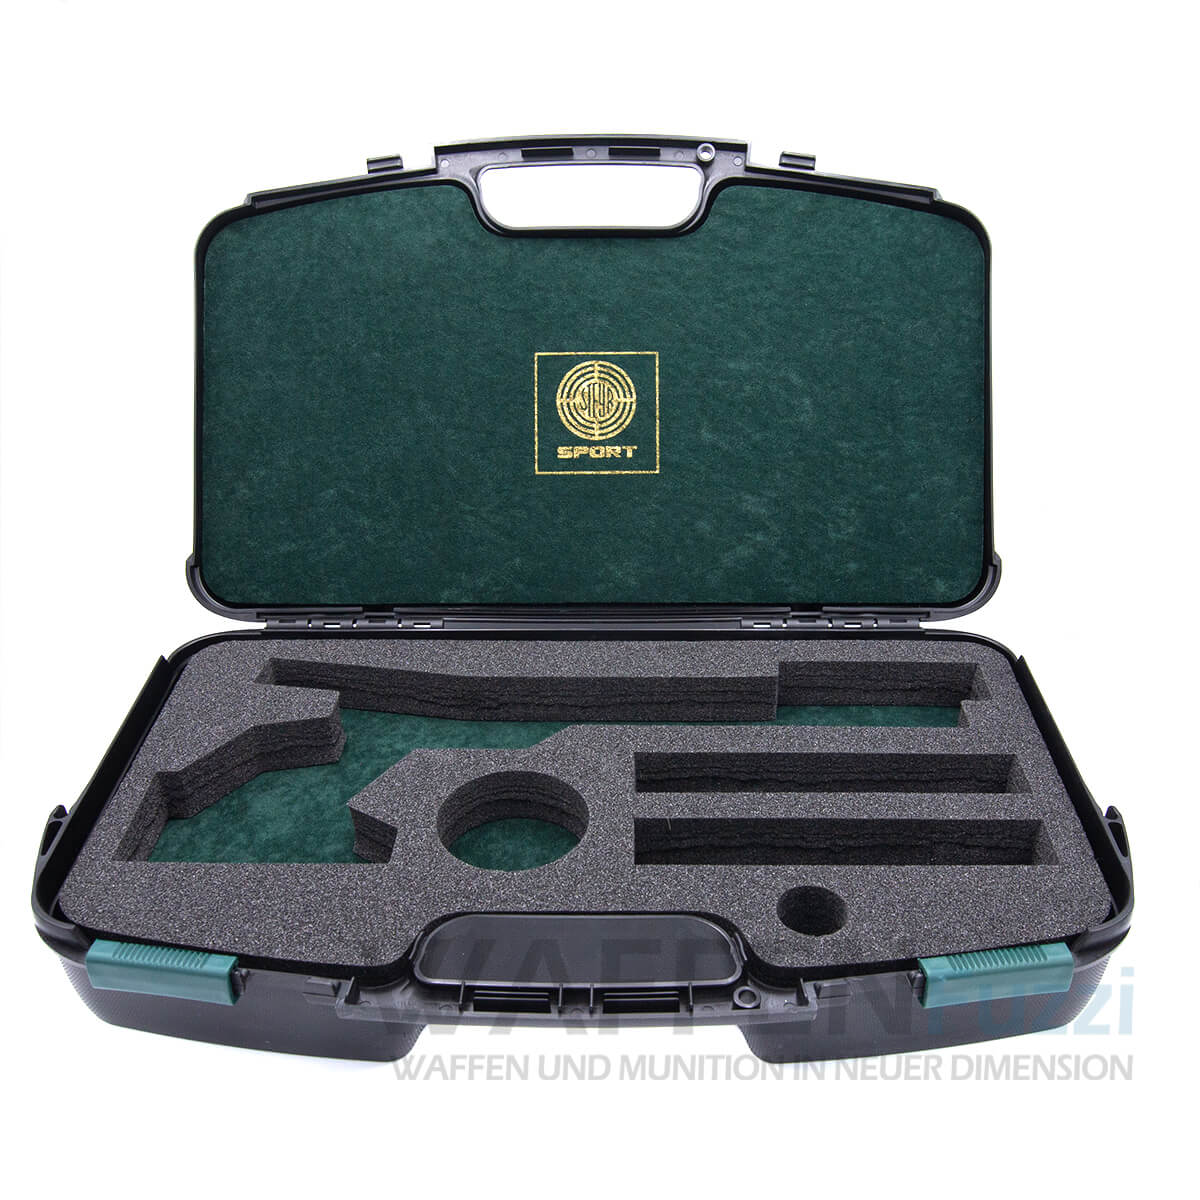 Steyr Luftpistolen Koffer XL für alle Auflage Modelle